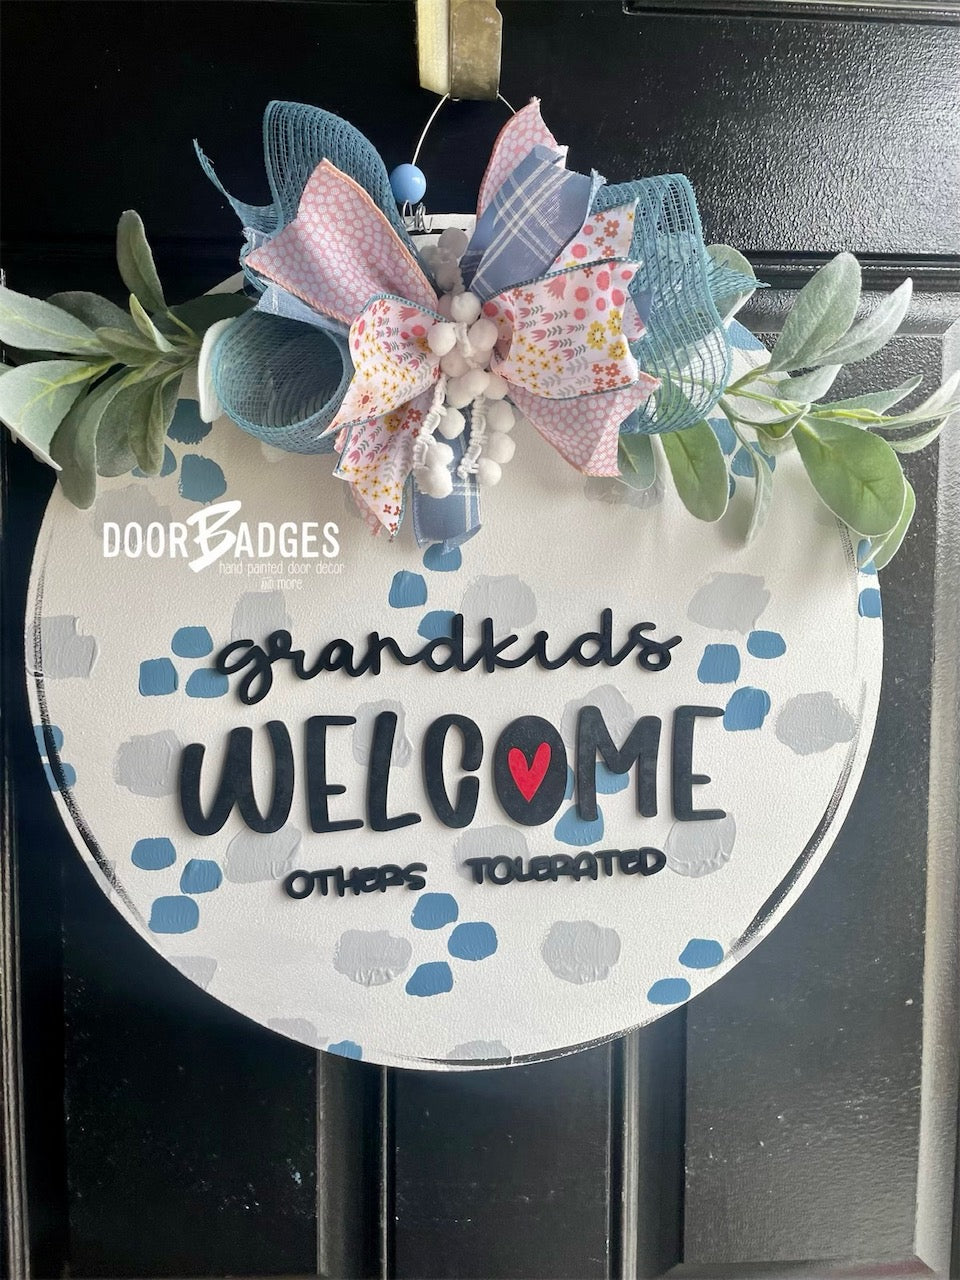 Grandkids Welcome Door Hanger